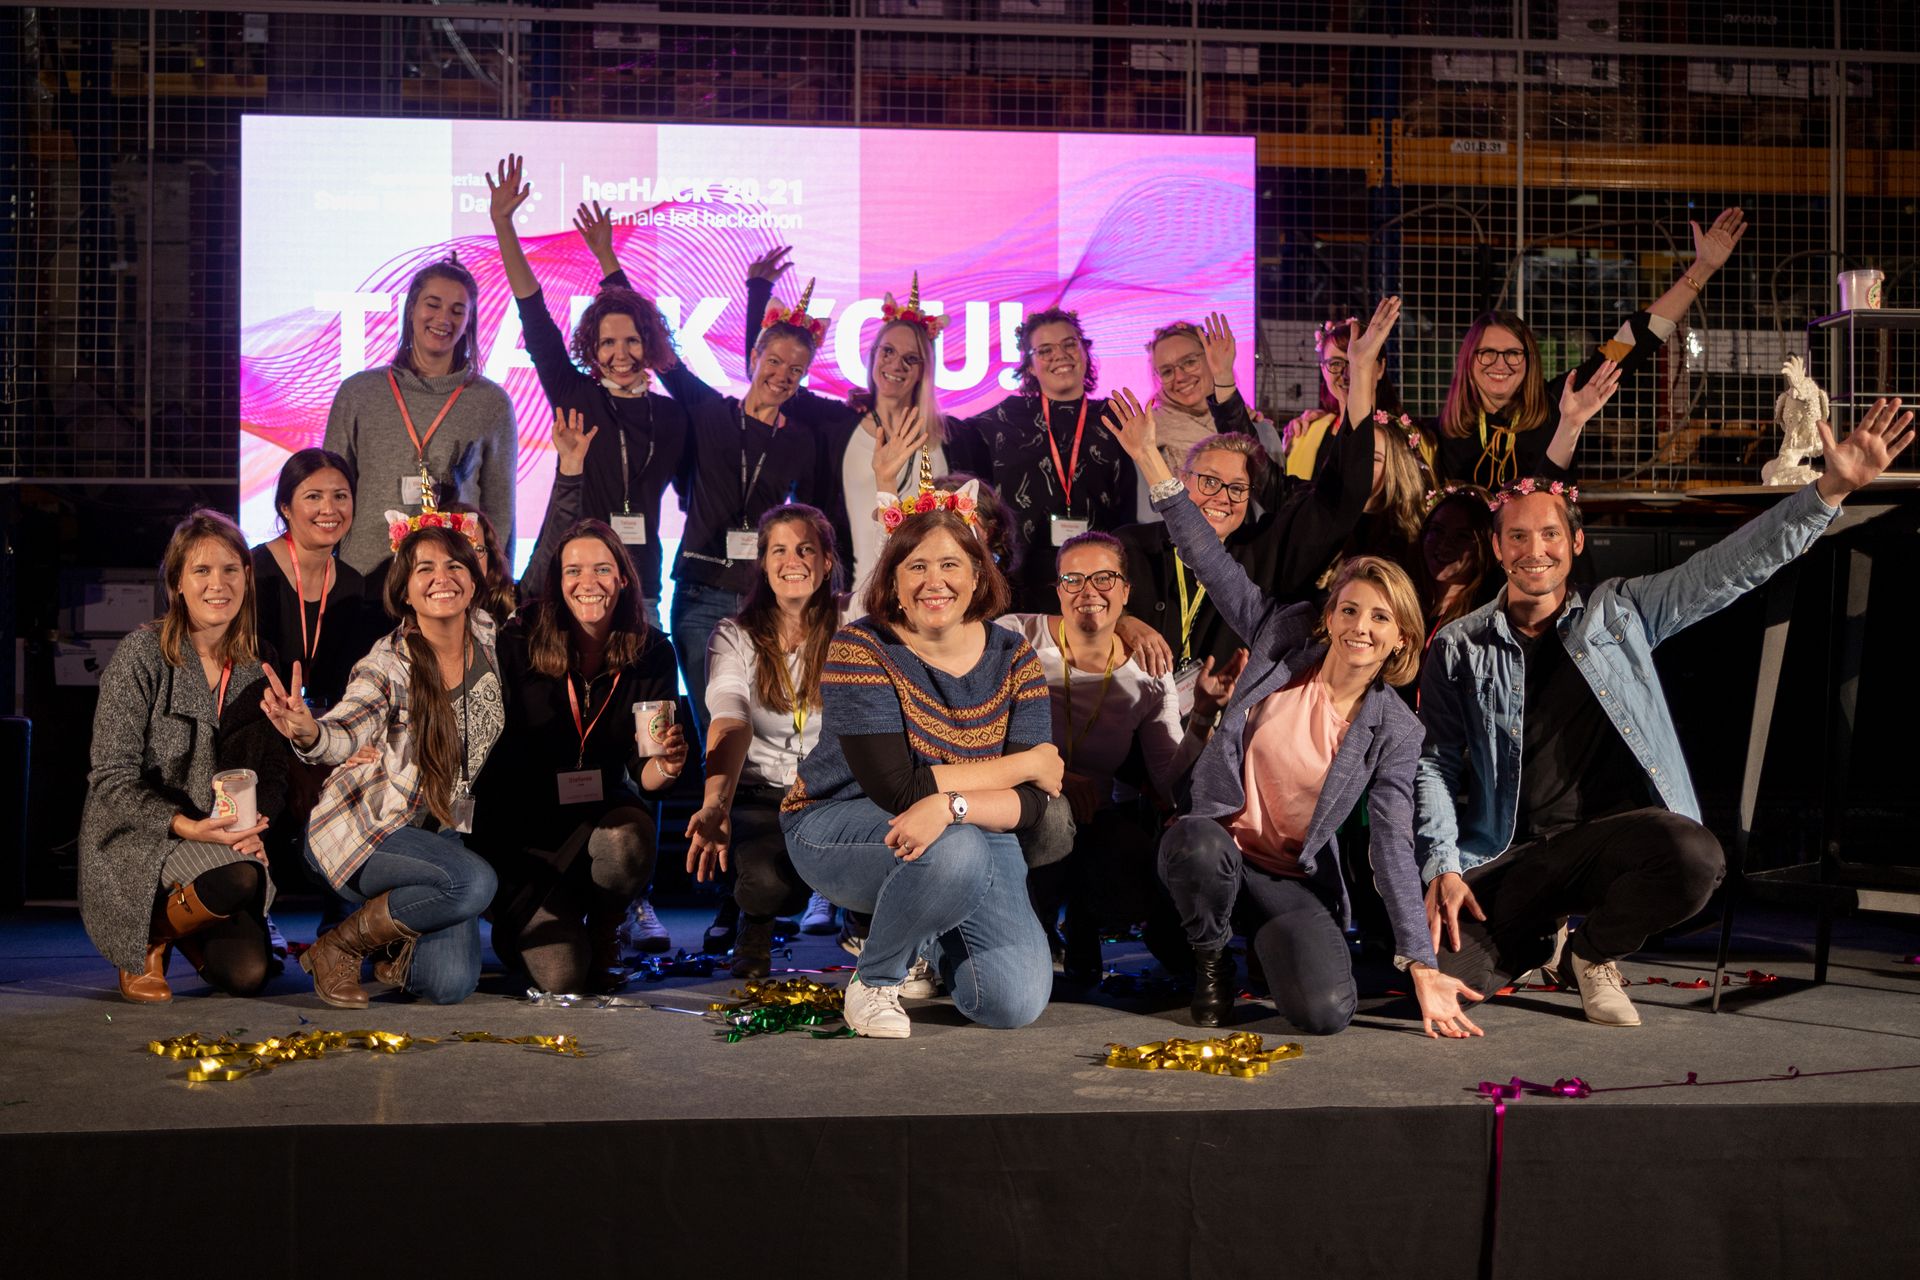 Le hackathon féminin "HerHack", organisé les 6 et 7 novembre dans le cadre du "Swiss Digital Day", a été remporté par la Team Iconics, formée de Melanie Menge, Fiona Hediger, Yamina Siegrist, Maria Kliesch et Elisabeth MacKenzie (Photo : Moritz Schmid )